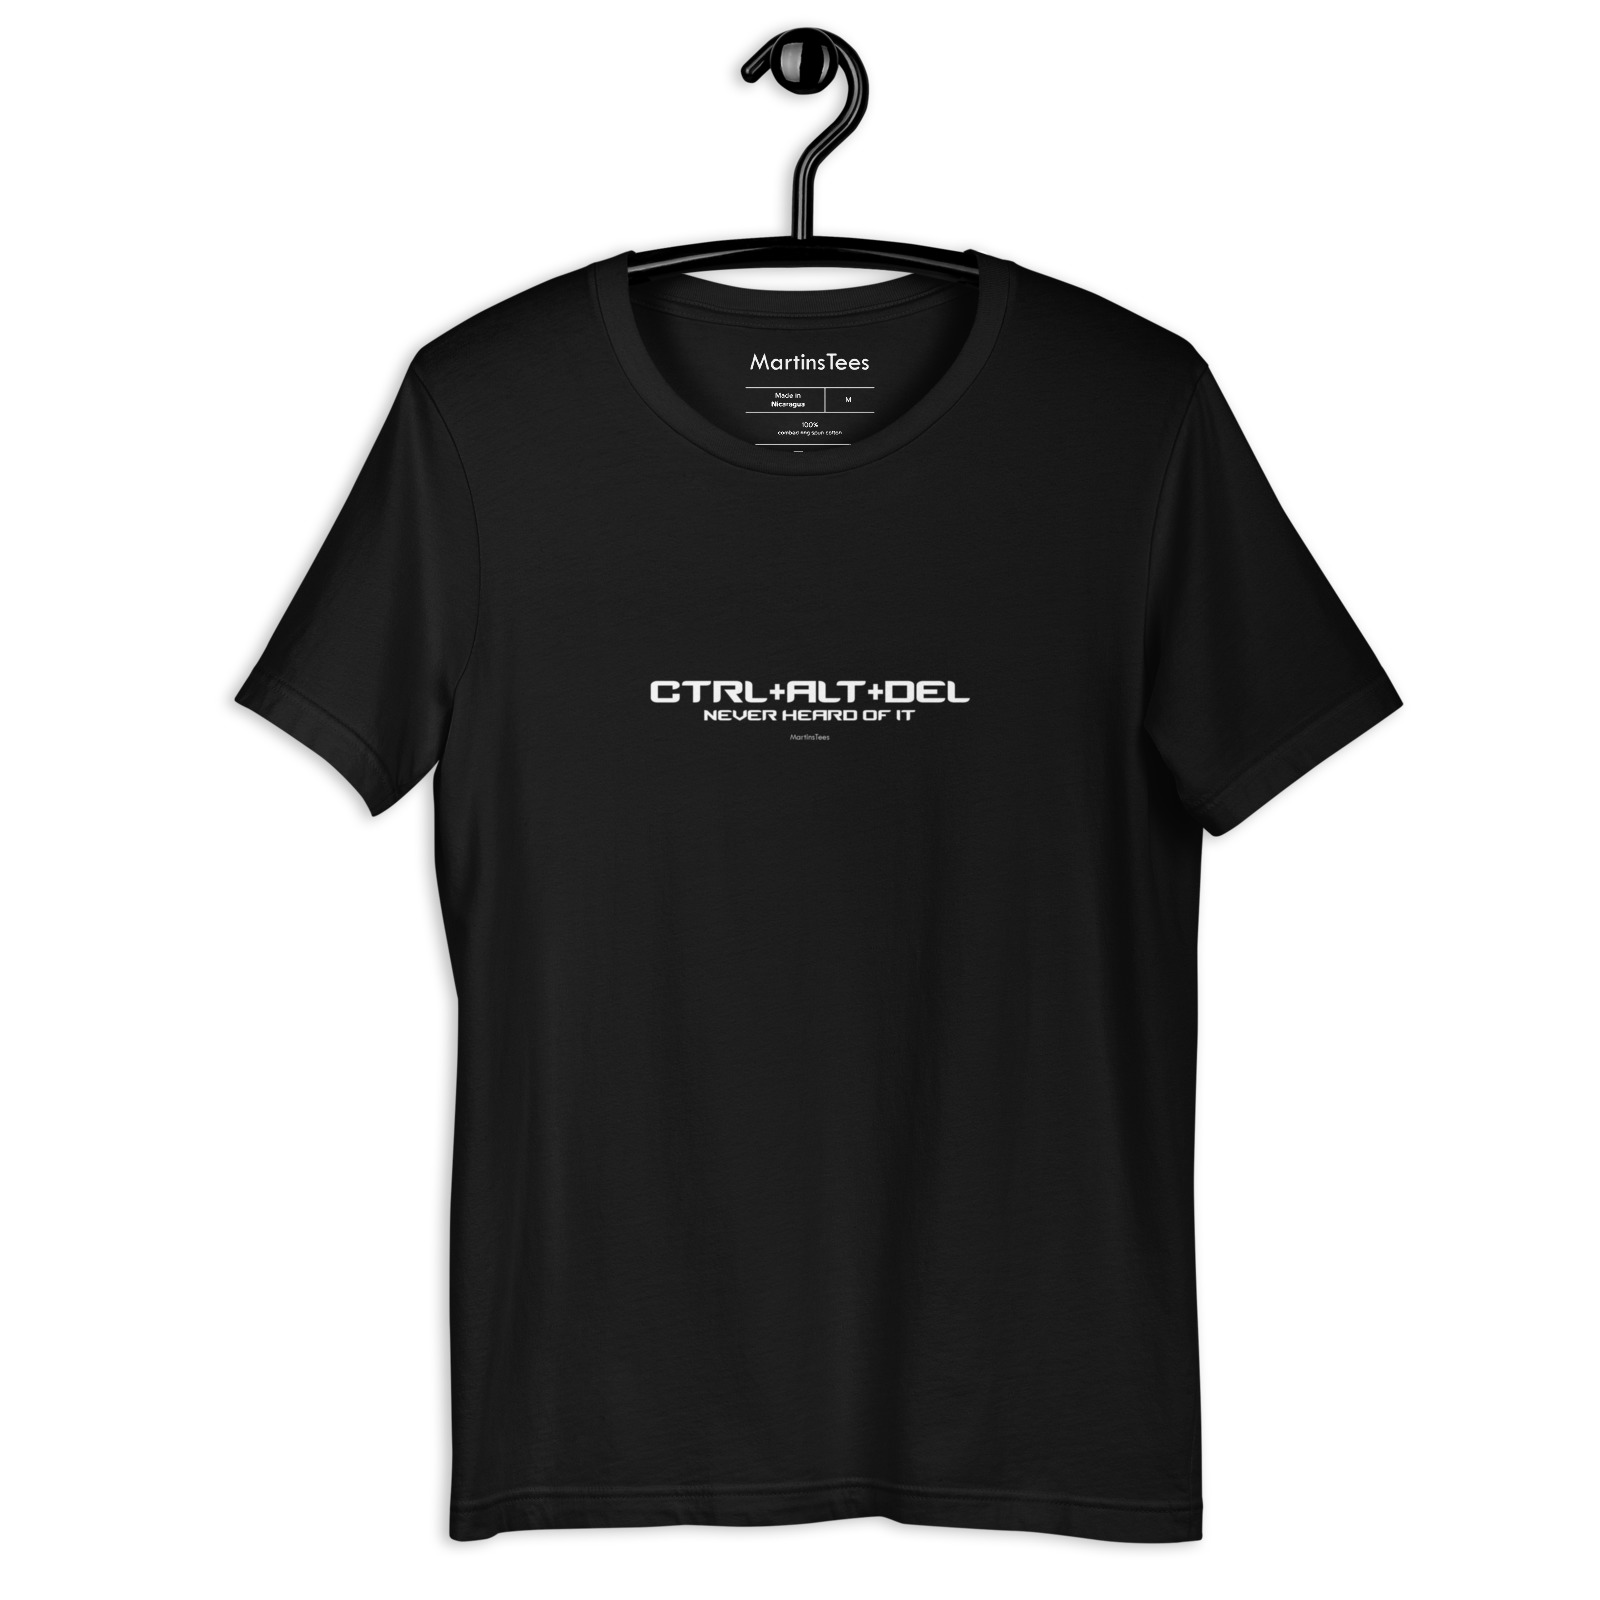 T-shirt: CTRL+ALT+DEL - NEVER HEARD OF IT